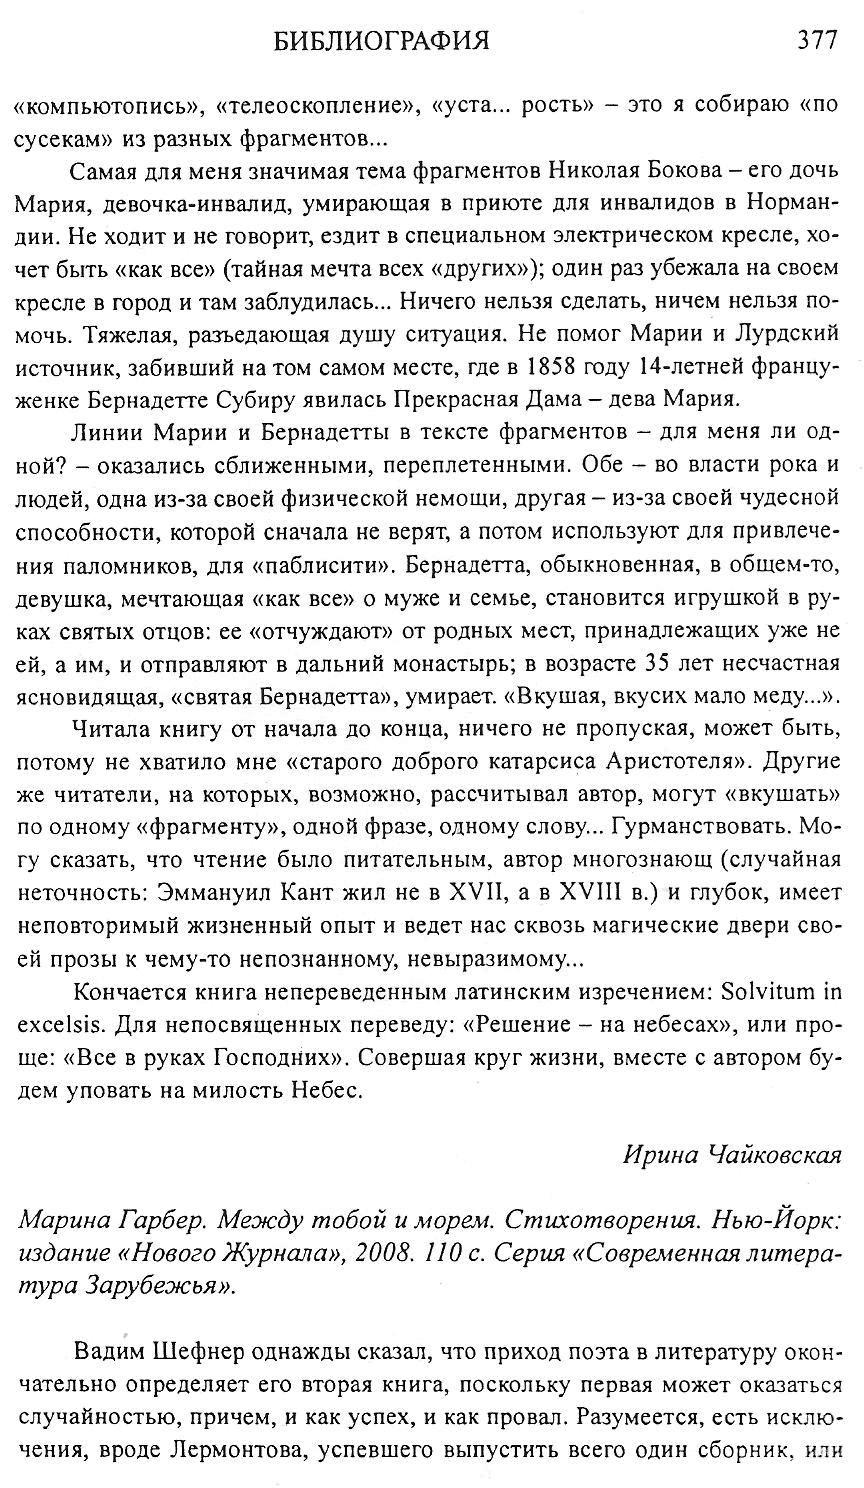 [ChakovskayaNJ257-6.jpg]